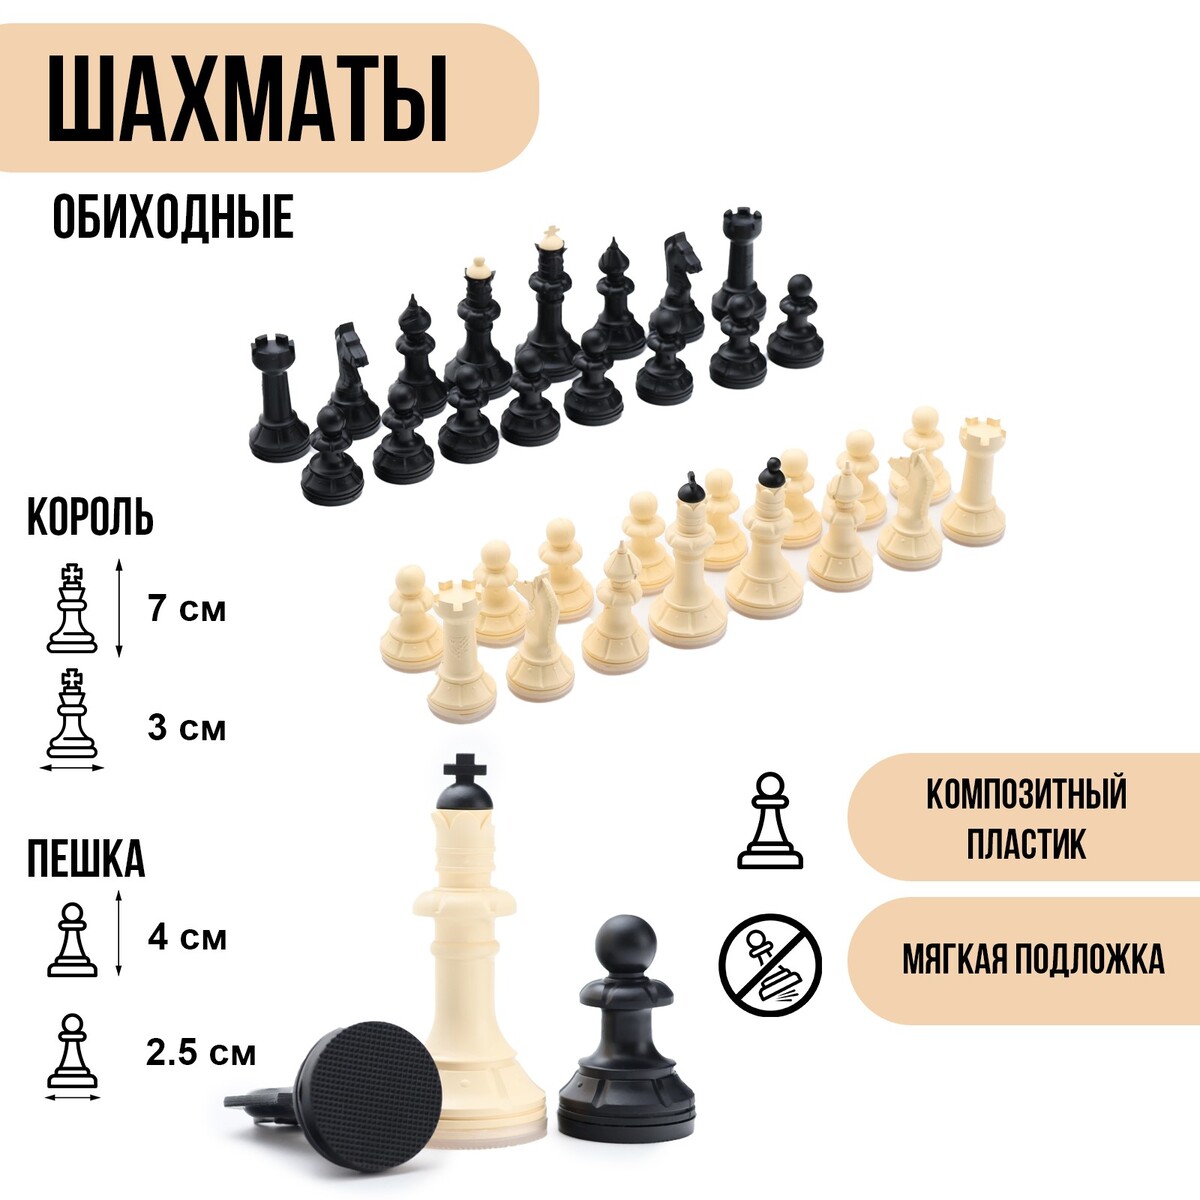 Шахматные фигуры обиходные, король h=7 см, пешка-4 см, пластик король лев